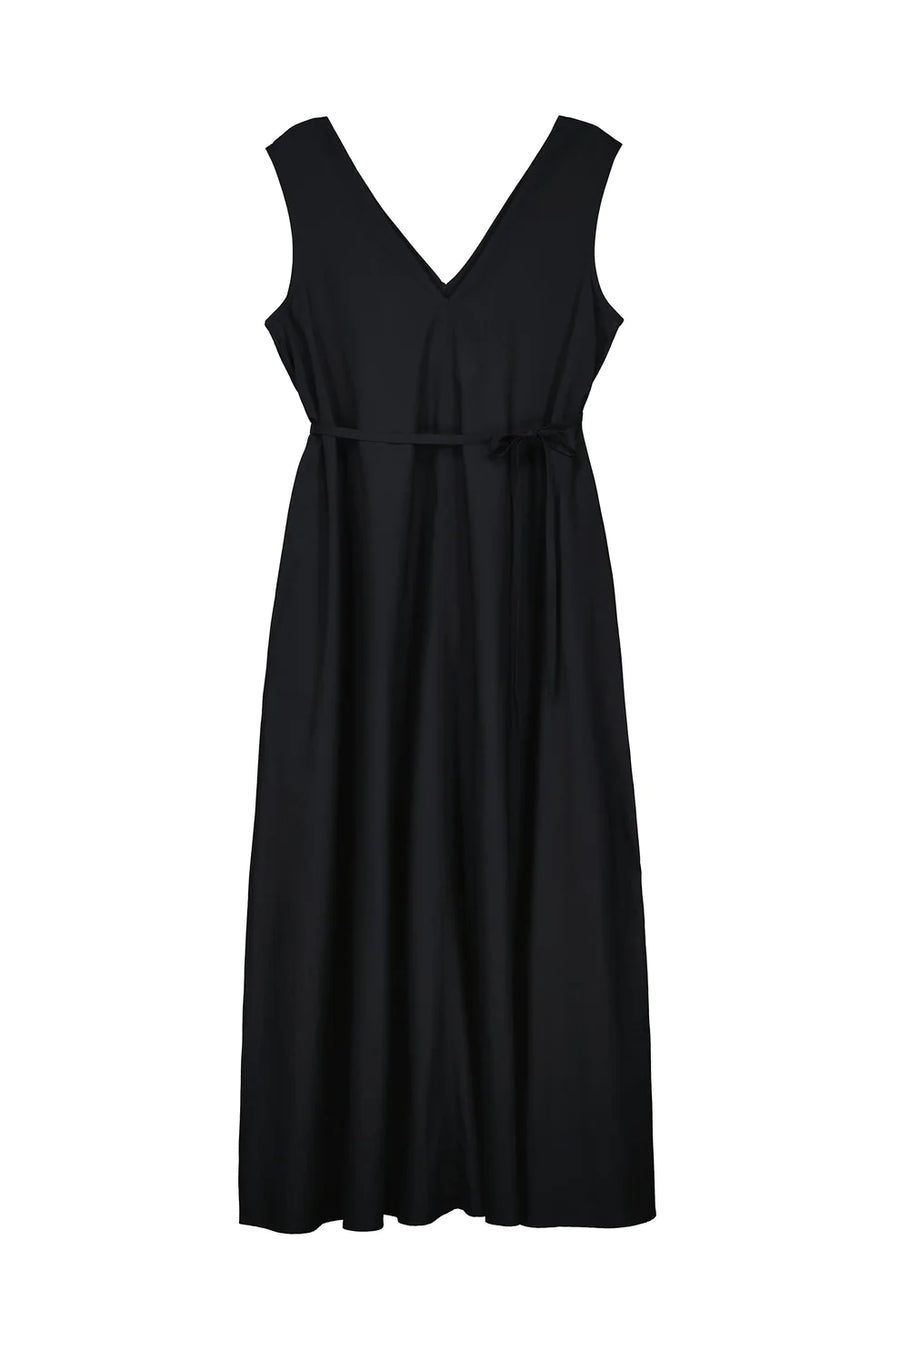 Isla Dress in Black by Kowtow-Idlewild